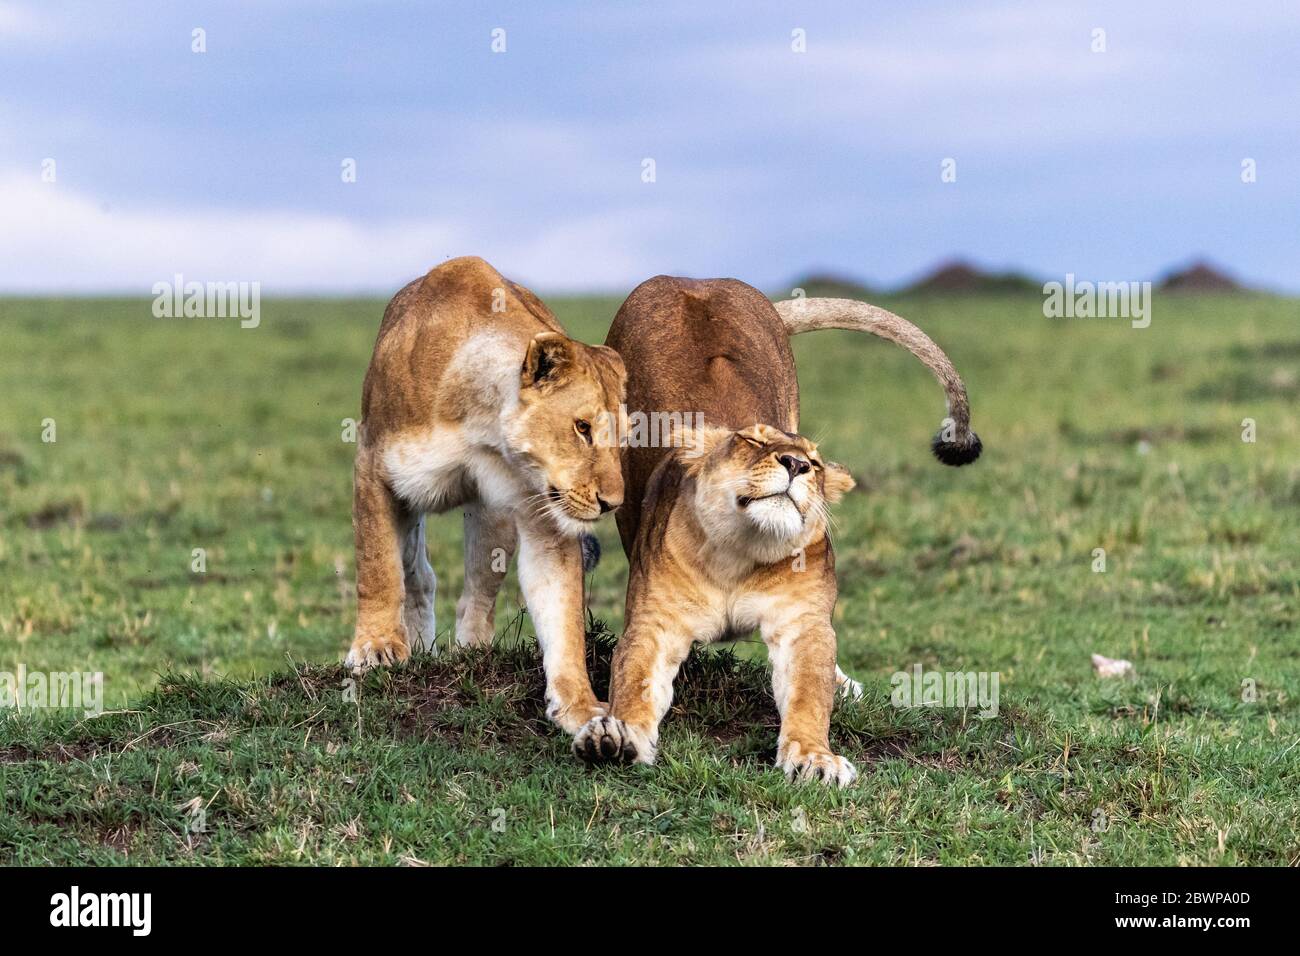 Deux lioness africaines s'accrochant et s'étendant ensemble dans le Triangle Mara Conservancy Triangle, Kenya Afrique Banque D'Images